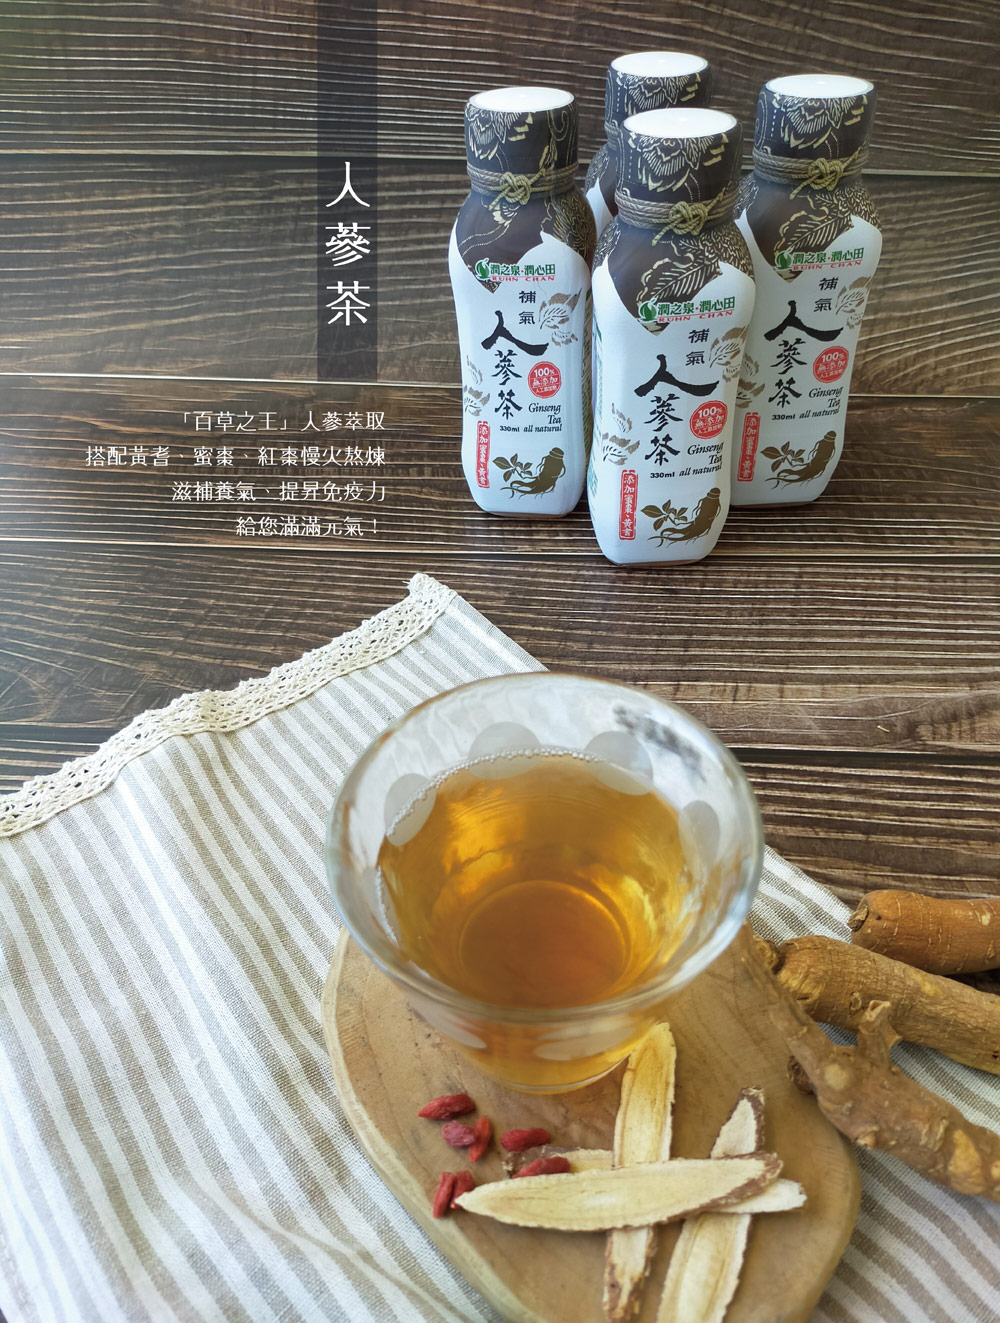       【潤之泉】健康養氣茶飲系列 330mlx24入/箱(人蔘茶、枸杞菊